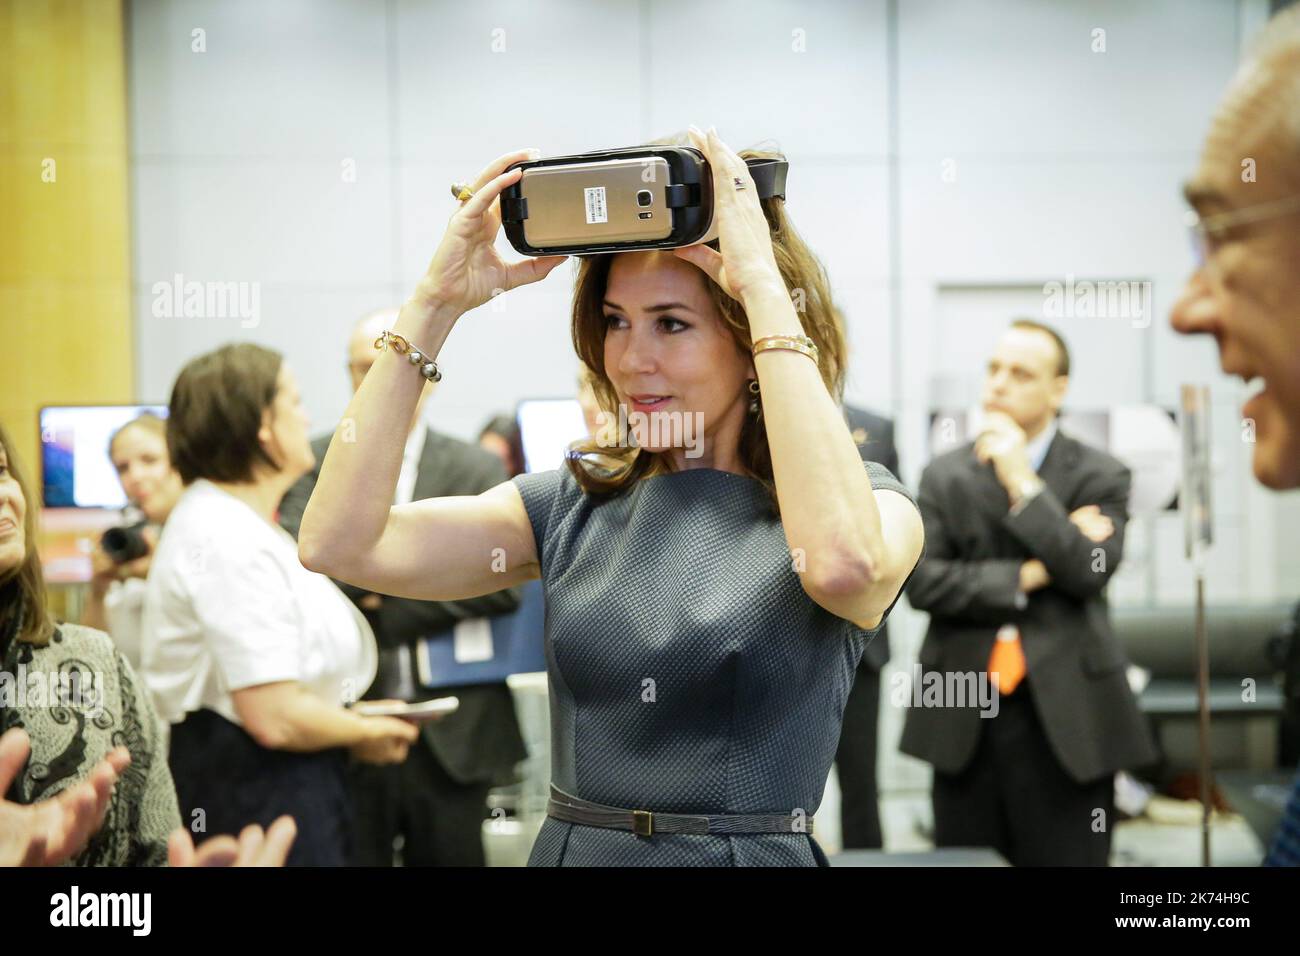 La principessa danese Mary visita la sala della realtà virtuale durante il Forum 2017 presso la sede dell'OCSE (Organizzazione per la cooperazione e lo sviluppo economico) a Parigi, Francia Foto Stock